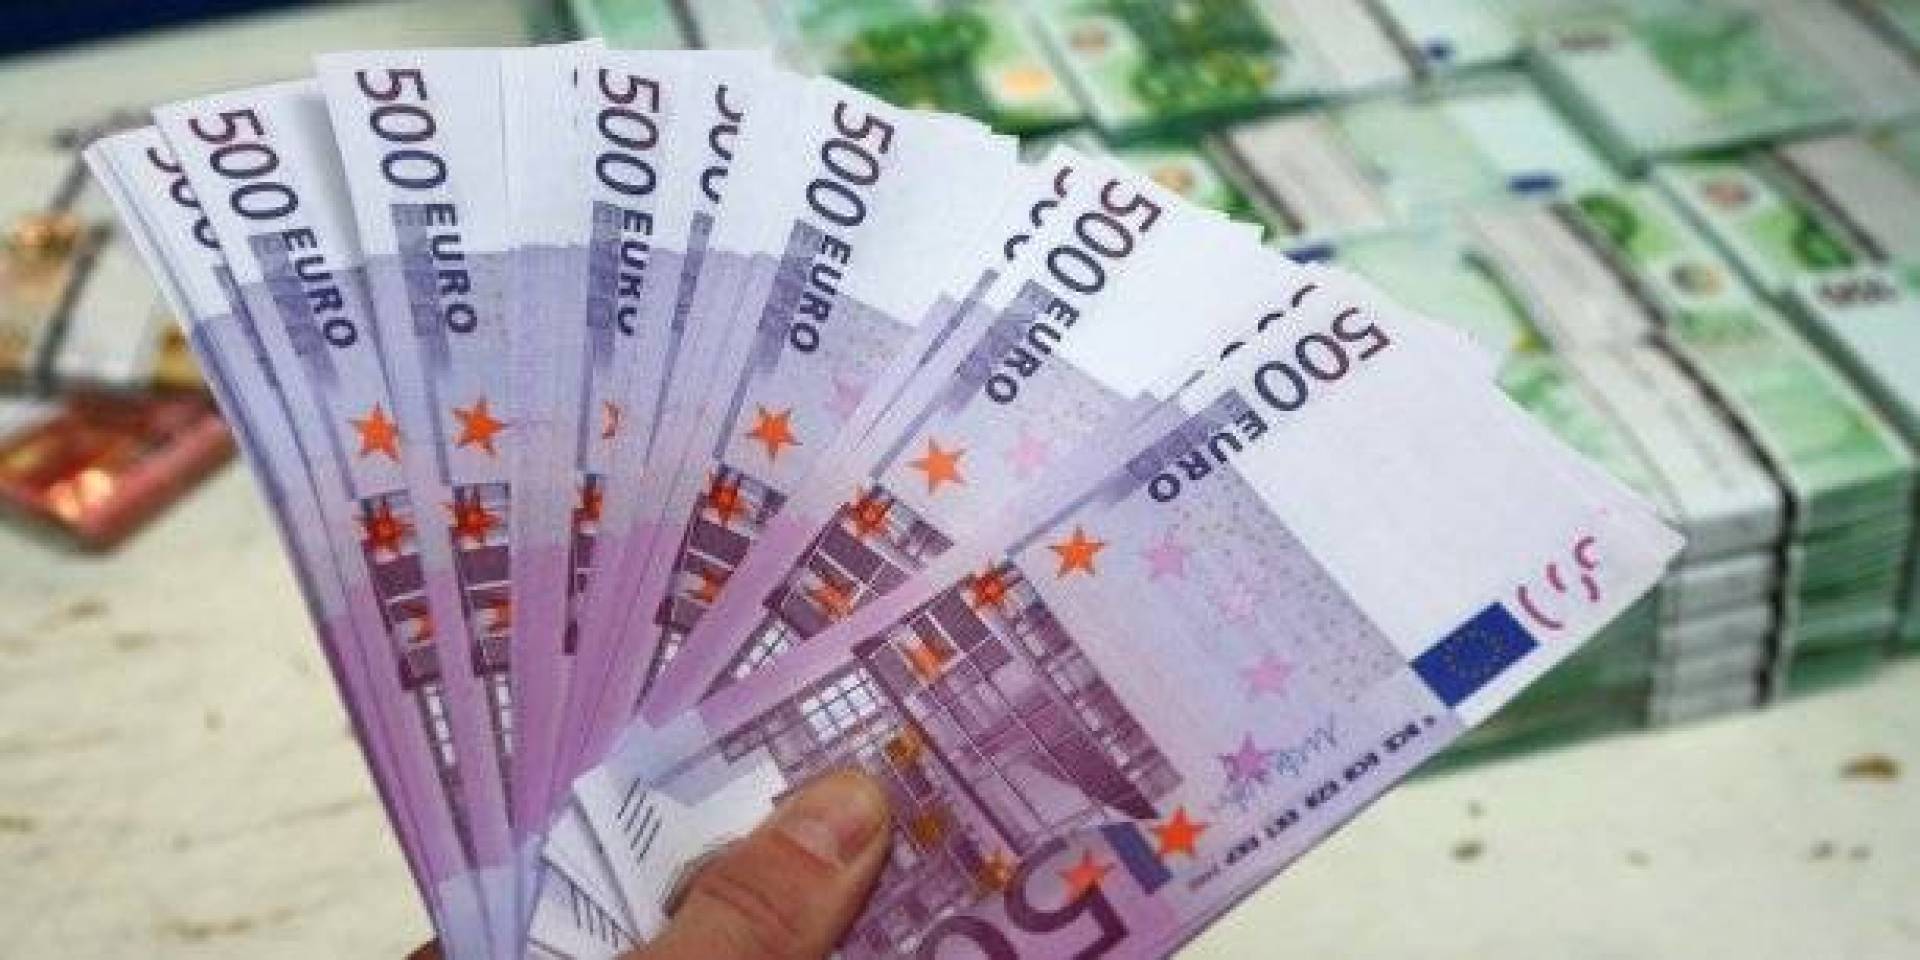 سوسة:سرقة مبلغ مالي من العملة الصعبة بقيمة 27 ألف أورو.